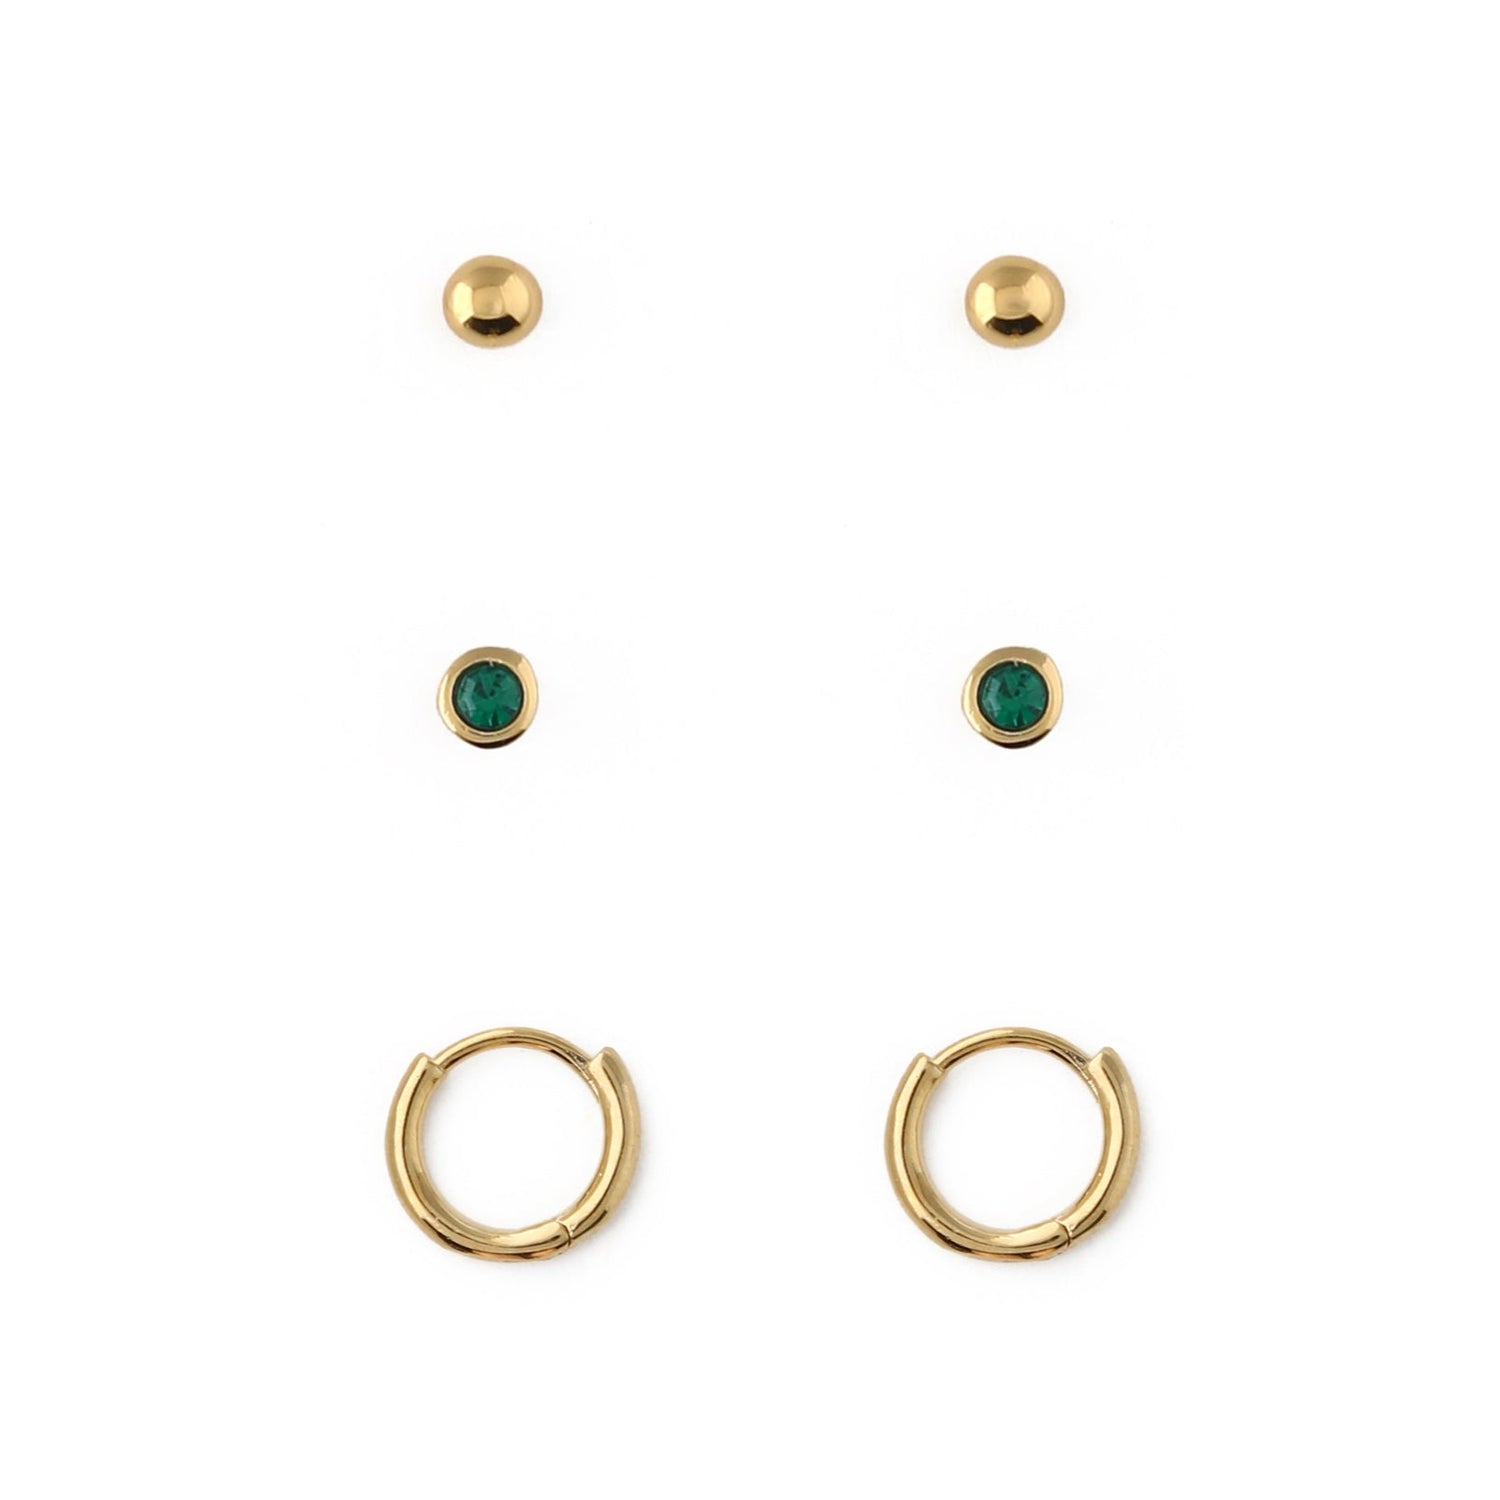 Emerald Stud & Hoop Earrings 3 Pack Made With Swarovski® Crystals